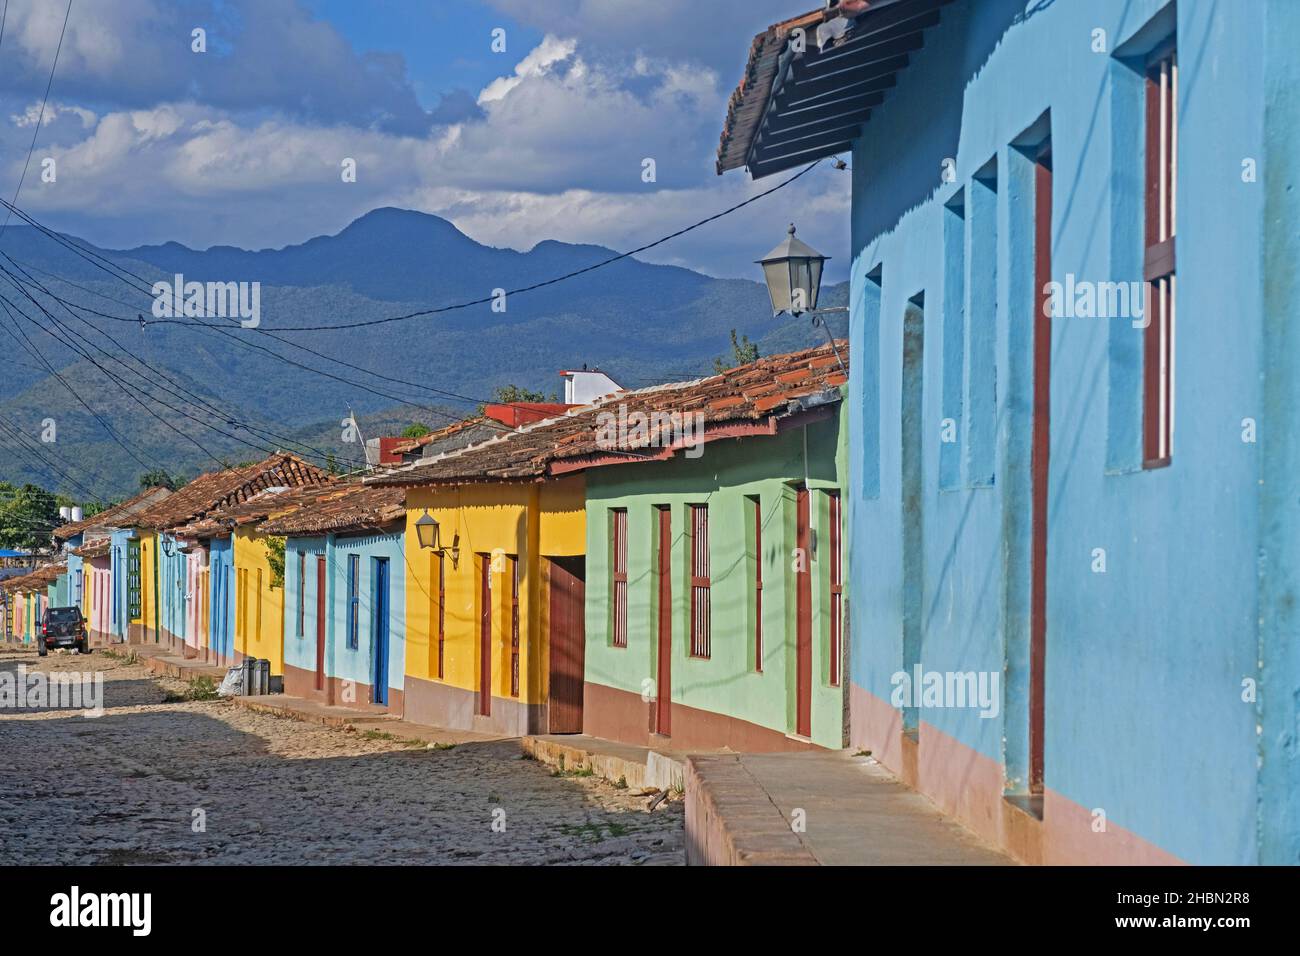 Koloniale gepflasterte Straße mit pastellfarbenen Häusern in der Stadt Trinidad, Provinz Sancti Spíritus auf der Insel Kuba, Karibik Stockfoto